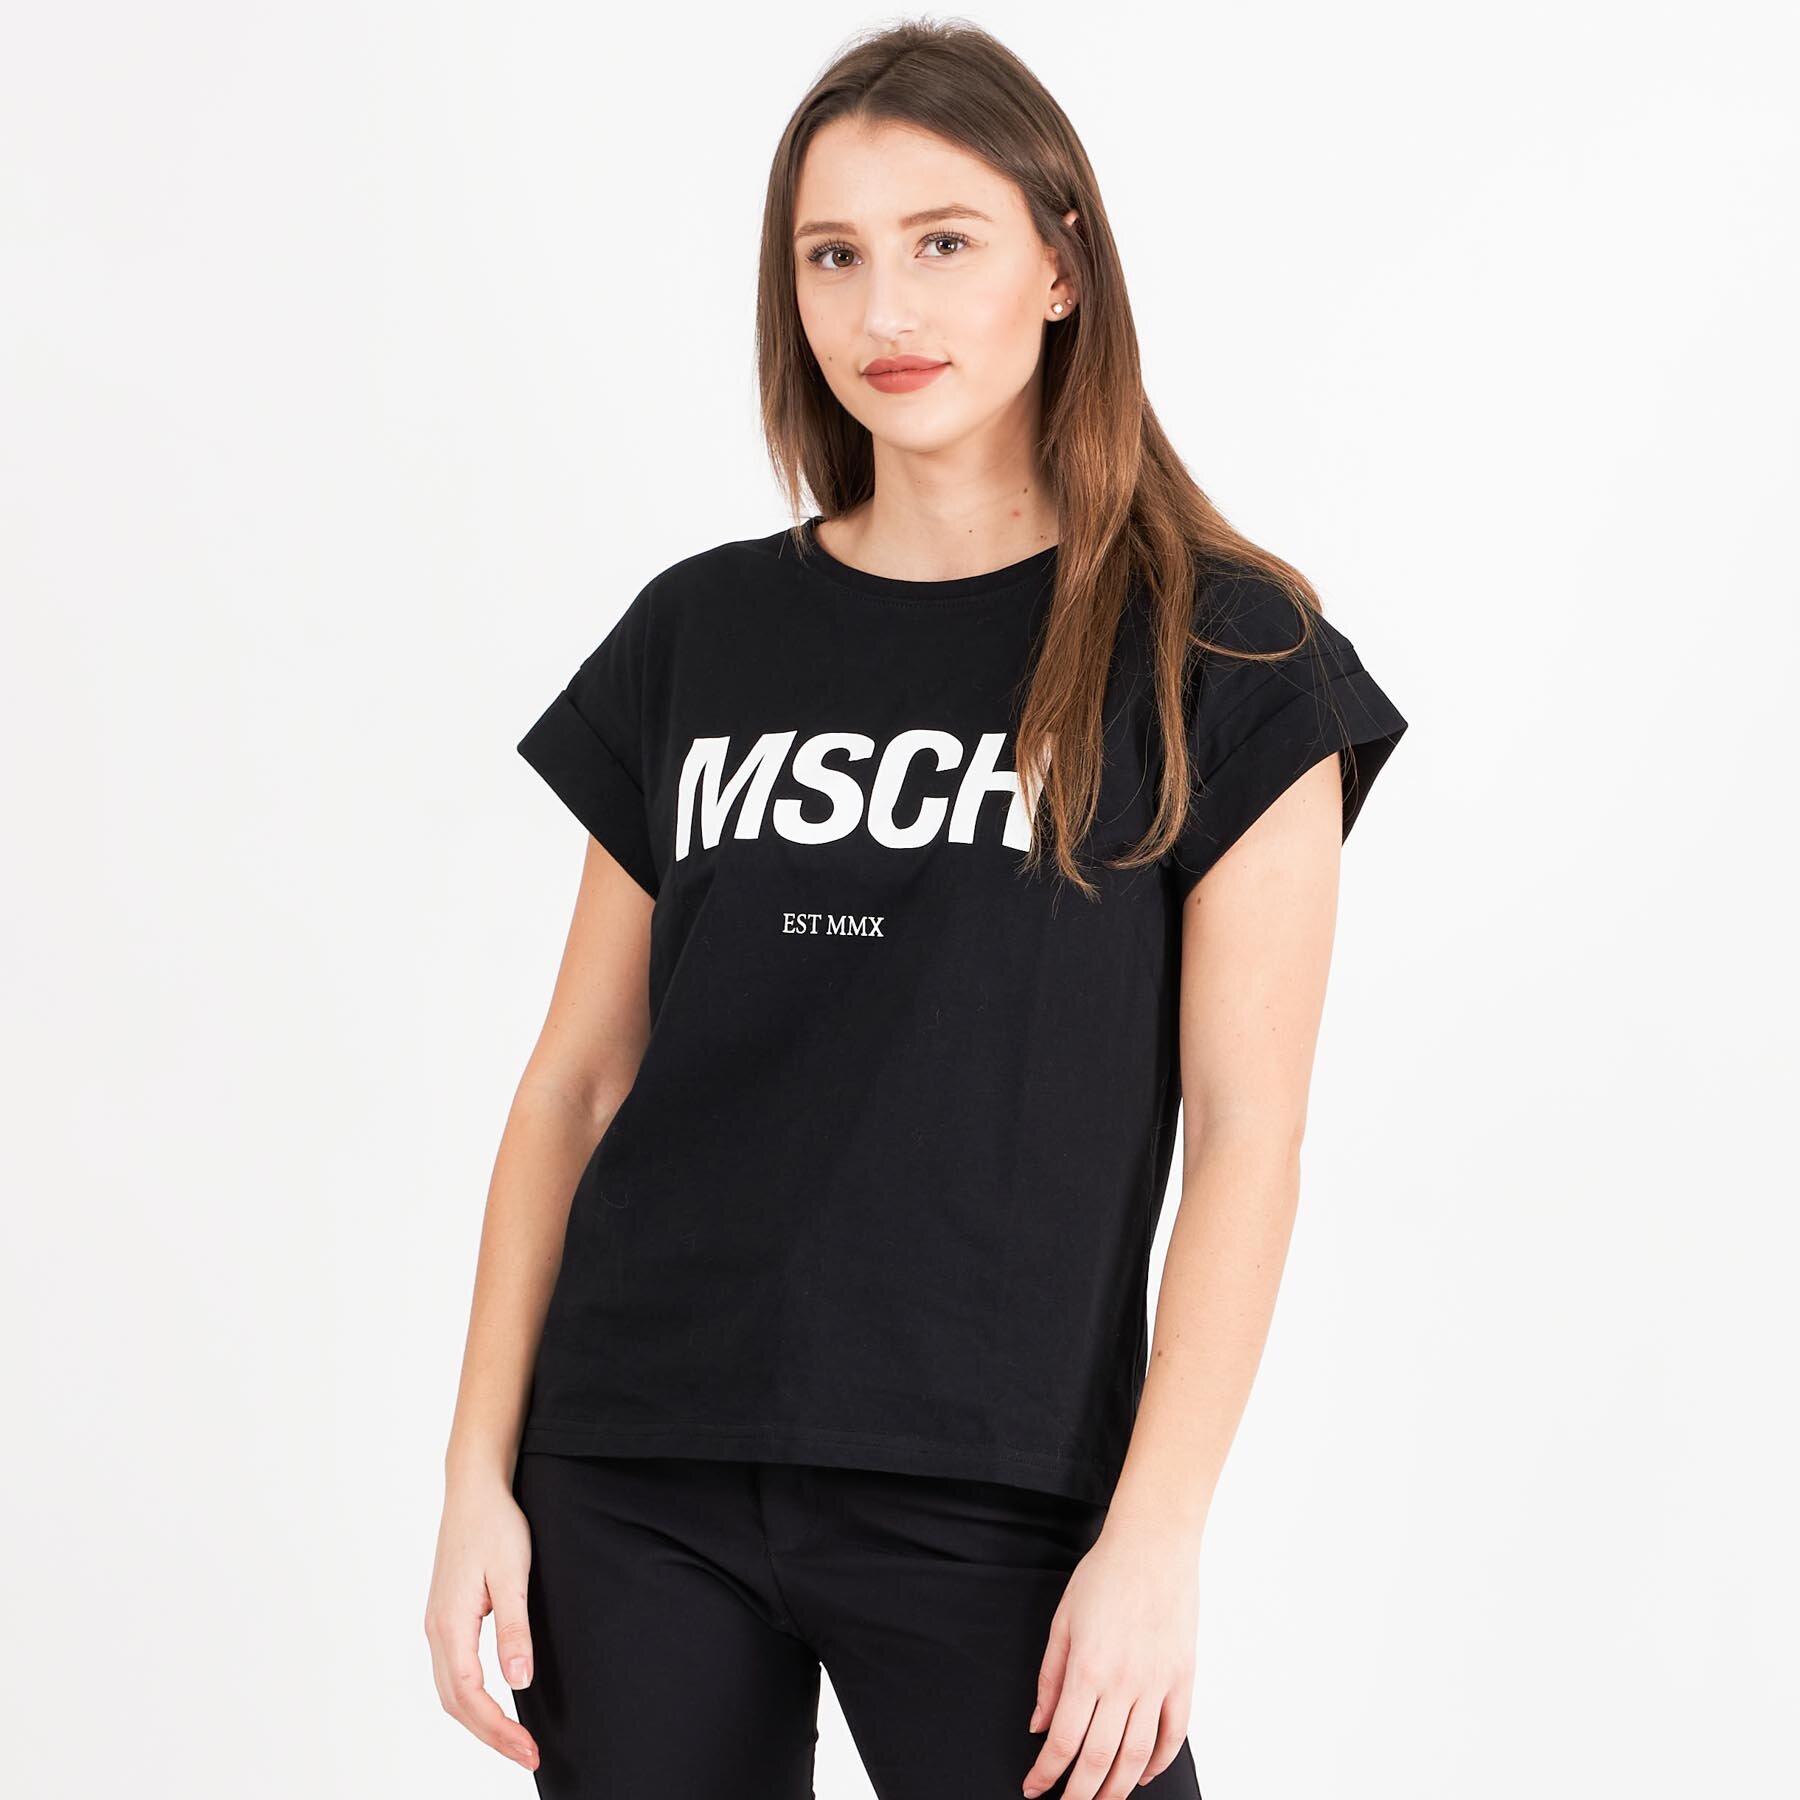 MOSS - Alva MSCH STD tee - T-shirts til damer - Sort S | Tjek den laveste pris her og køb i dag